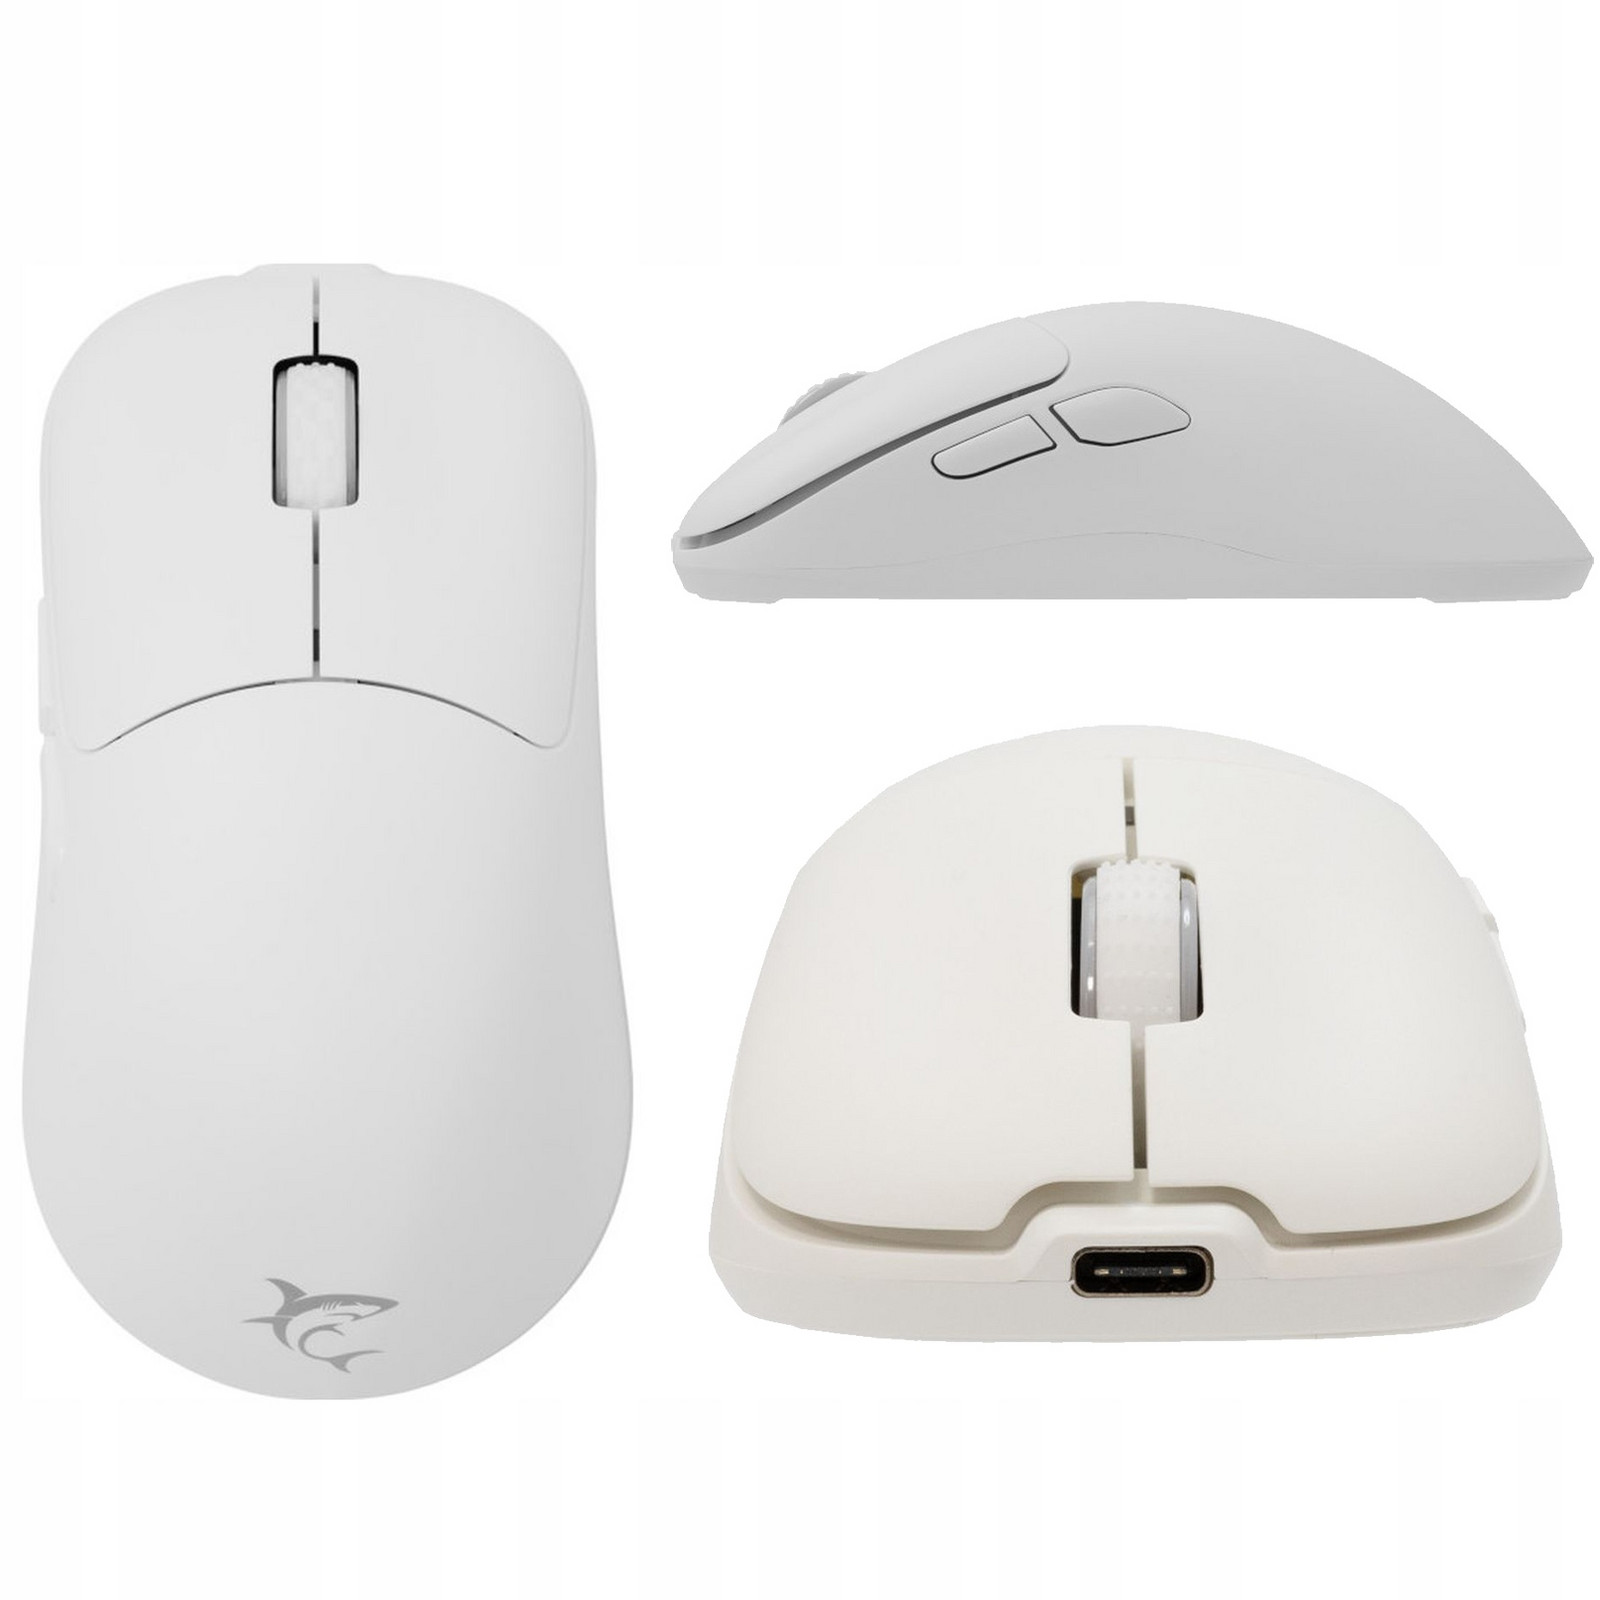 Bezdrátová myš herní myš Whiteshark k počítači notebooku tichá